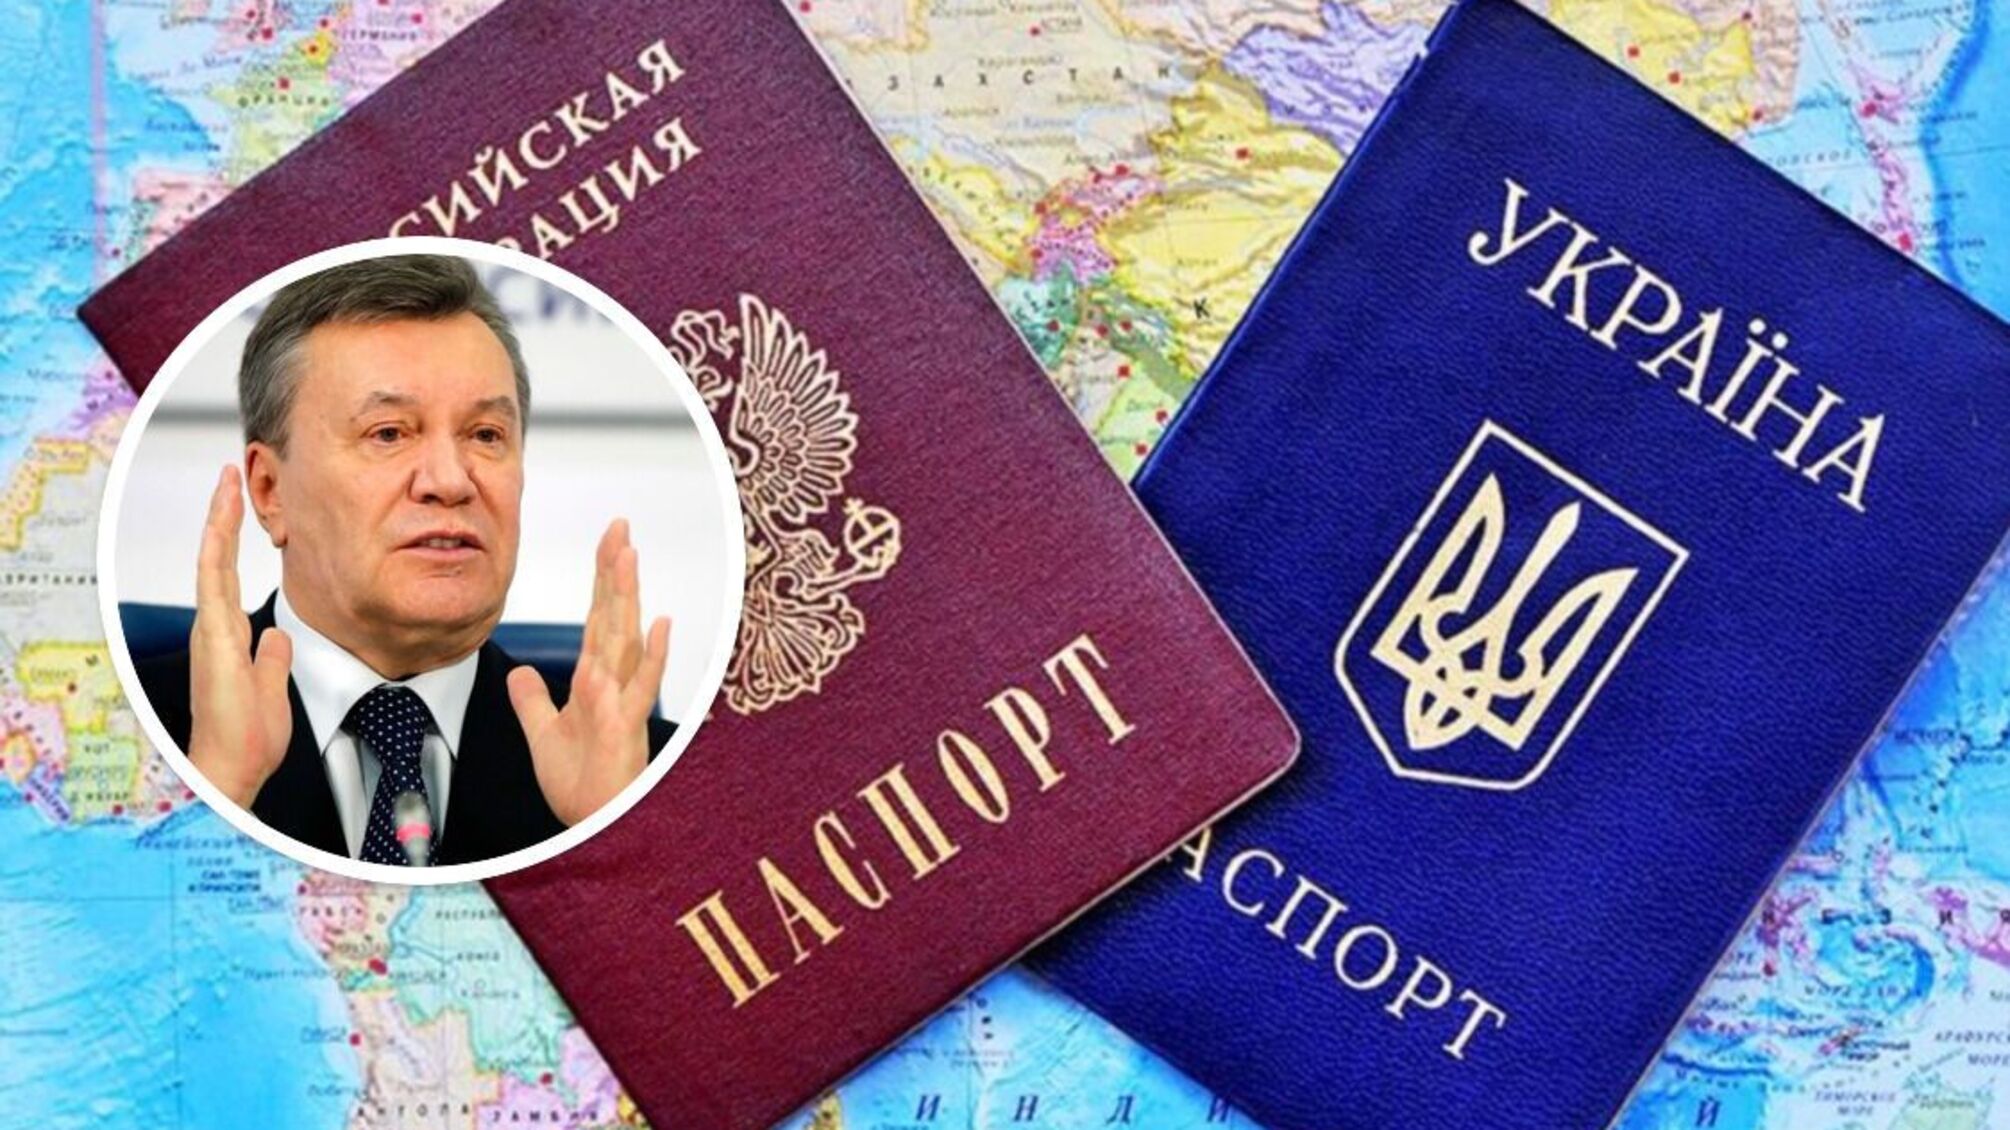 Табачник, Клименко, Захарченко, брати Клюєви будуть позбавлені громадянства України - що відомо